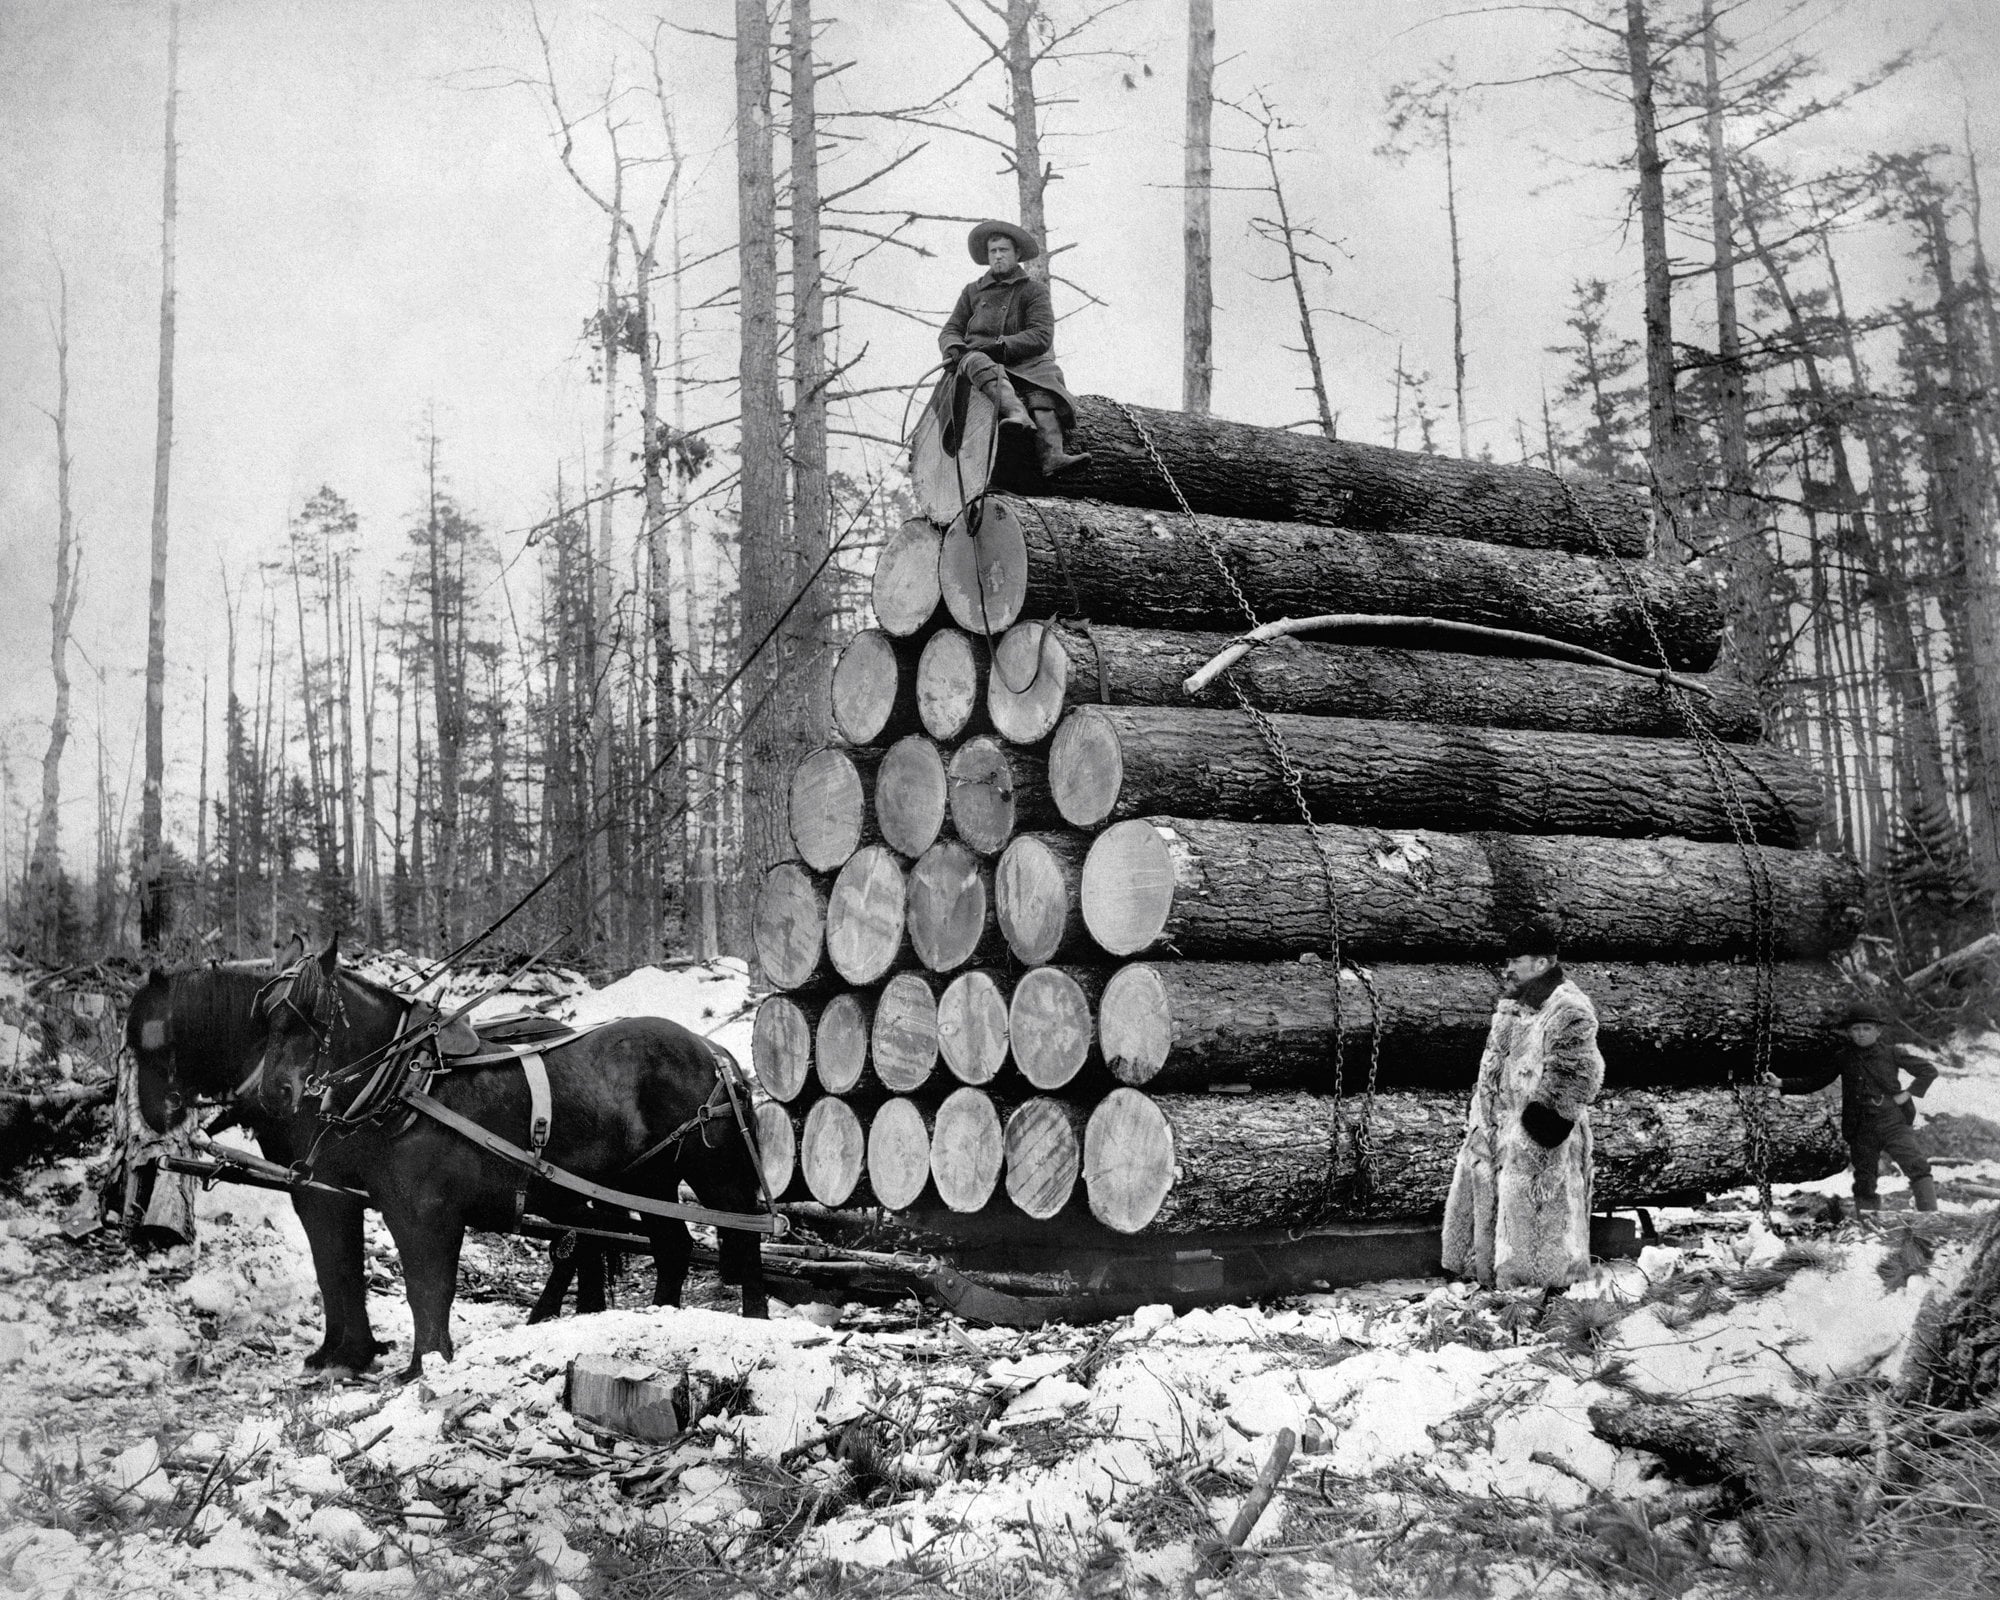 Е годы именно в это. Лесопилка 19 века. Трелевка древесины это. Вывозка леса на лошадях. Заготовка леса.